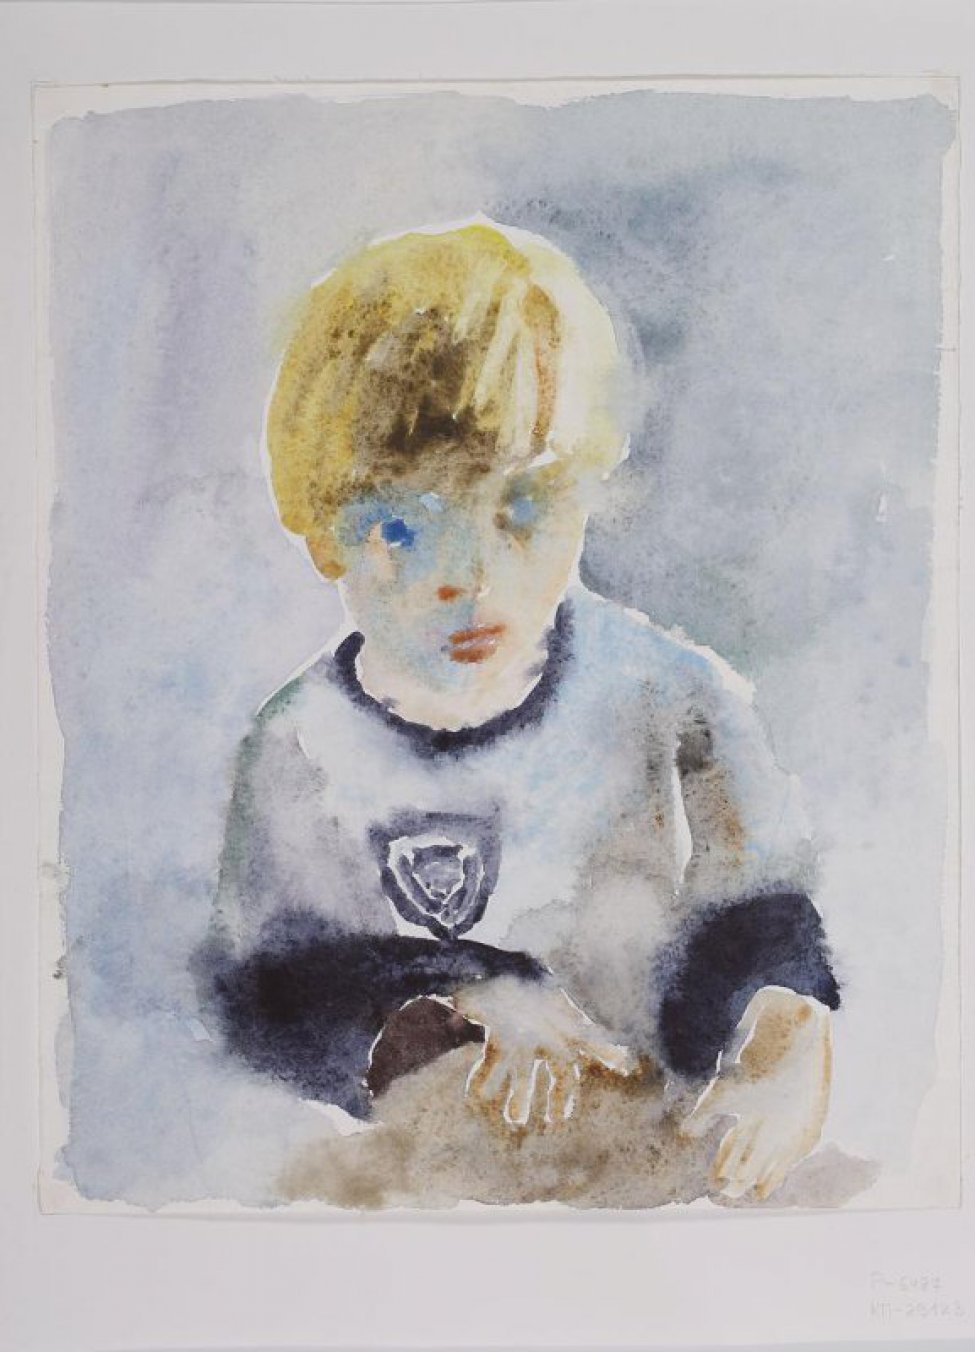 На светлом сиренево-голубом фоне - погрудное изображение анфас мальчика с желтыми волосами, светлой кофте с эмблемой справа, нижняя часть рукавов темно-синяя. Взгляд направлен вверх и в сторону.